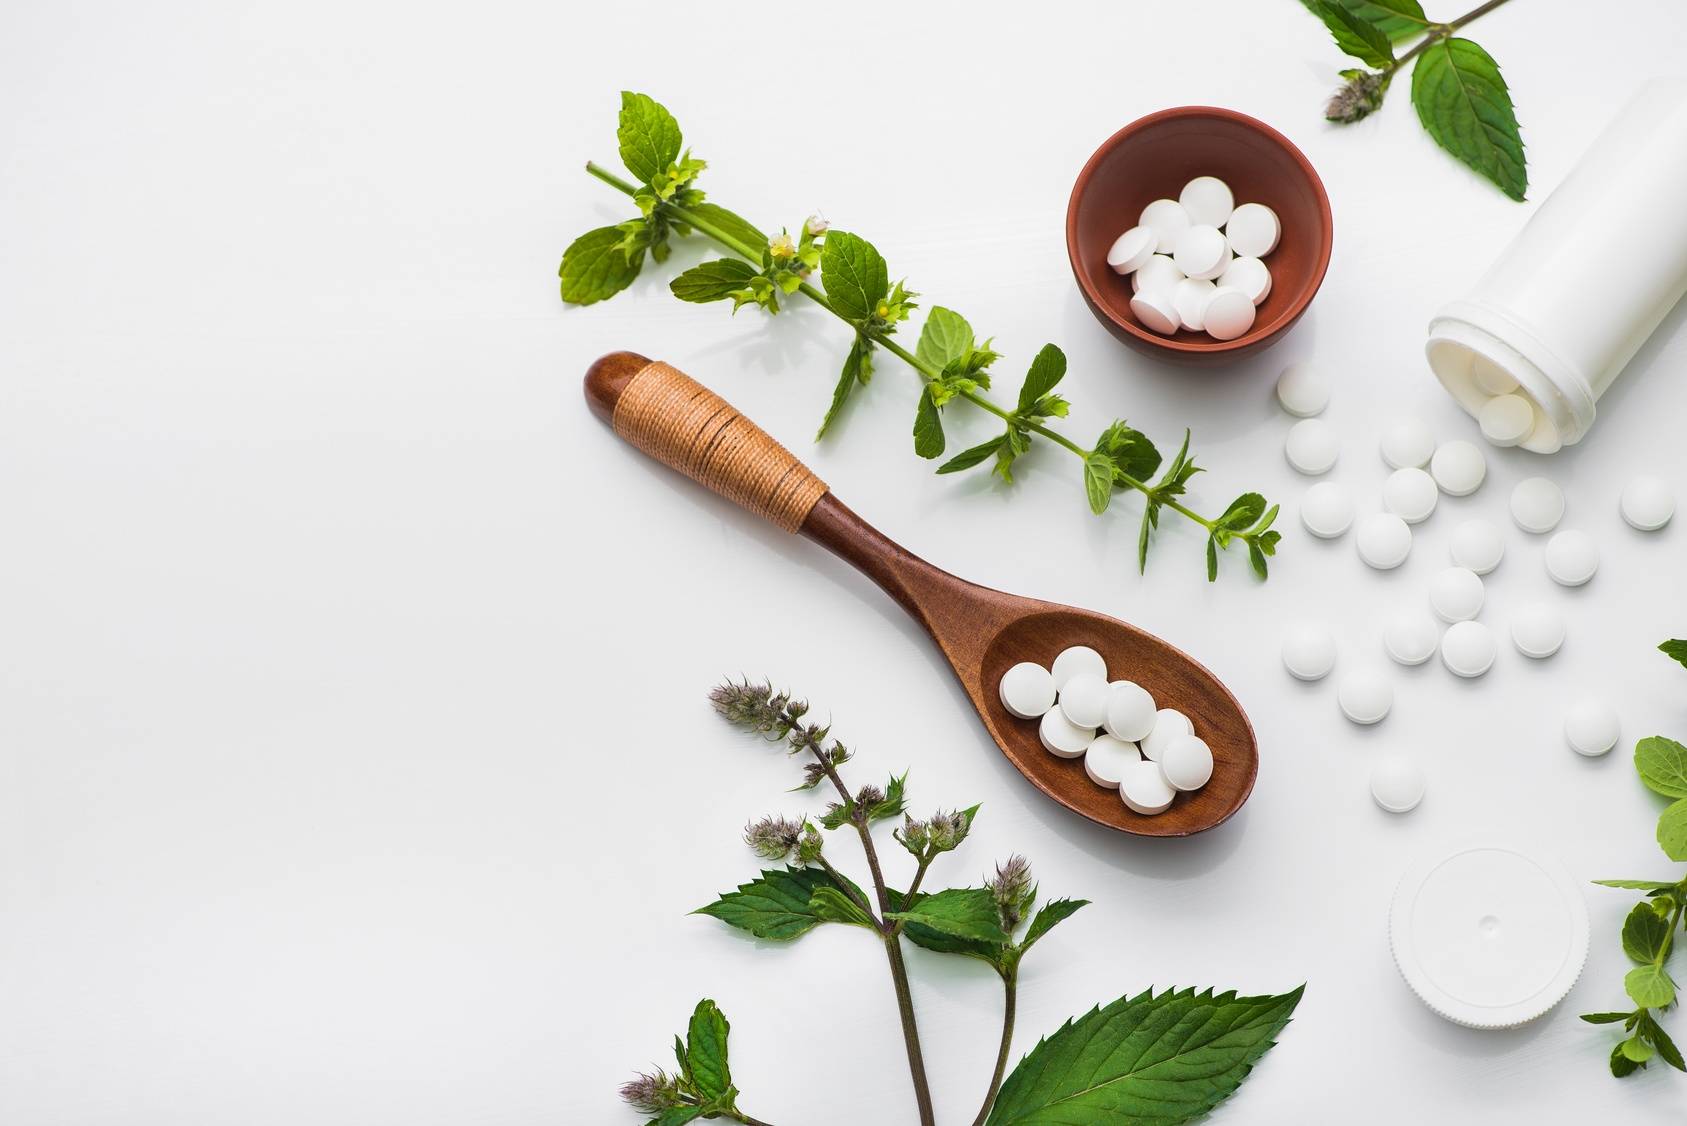 Leki syntetyczne i roślinne - co je łączy? Na bazie jakich substancji roślinnych tworzone są leki syntetyczne w laboratorium?